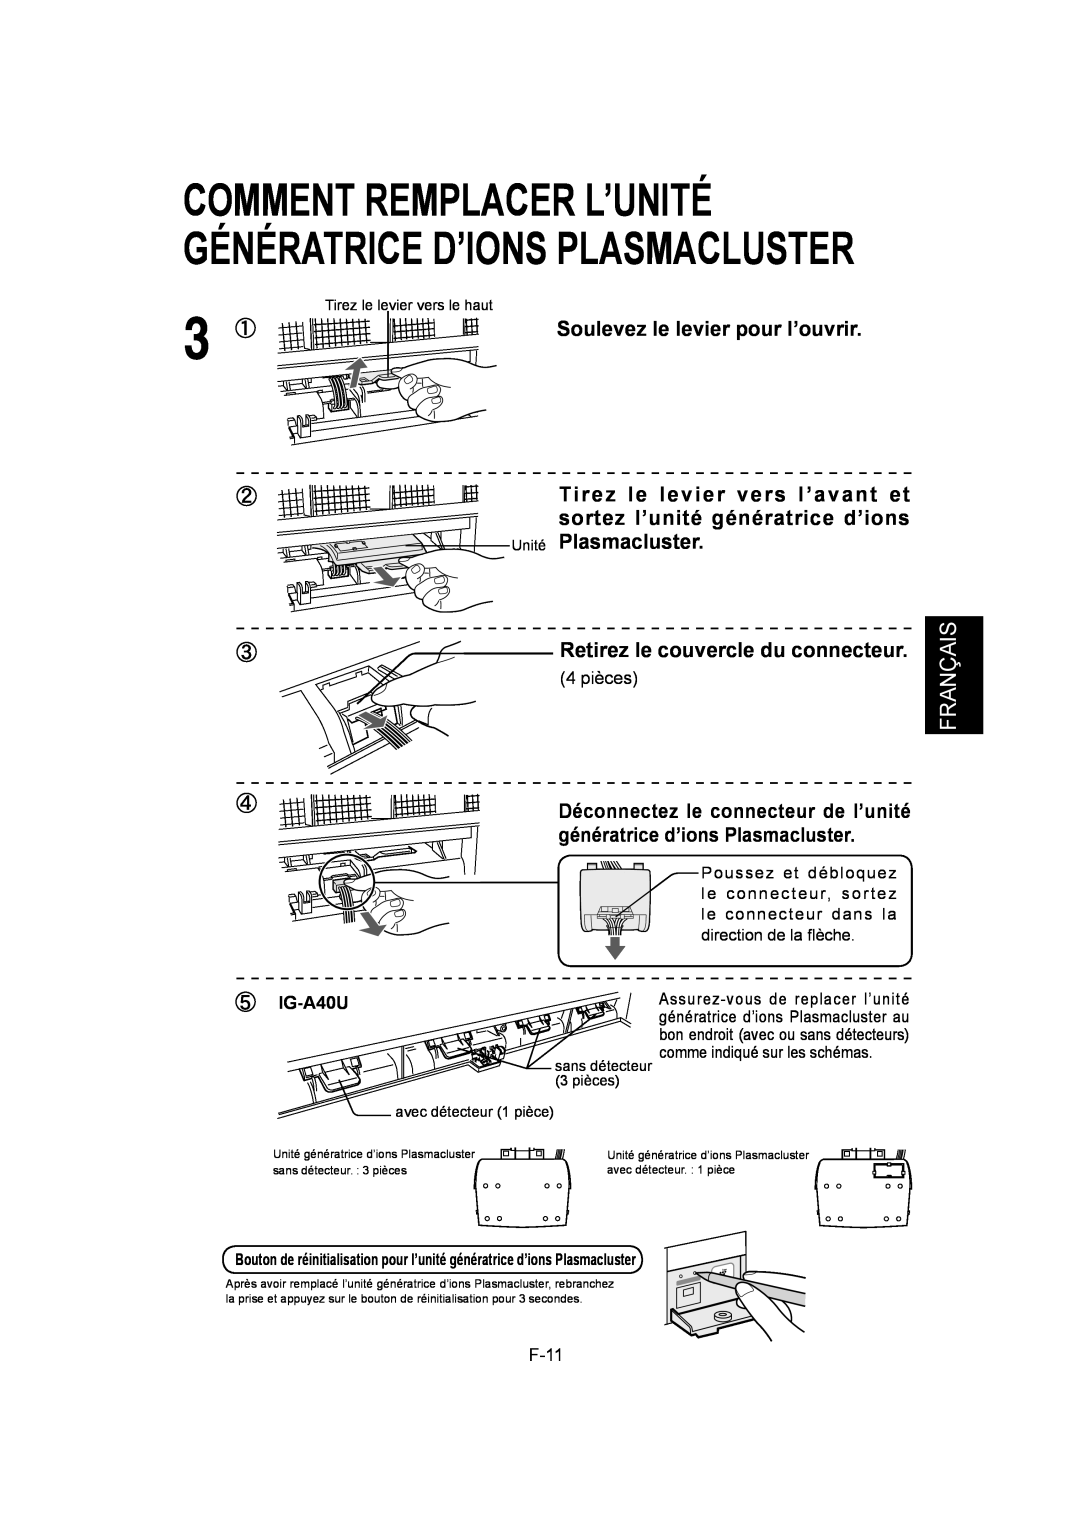 Sharp IG-A40U Soulevez le levier pour l’ouvrir, Unité Plasmacluster, Retirez le couvercle du connecteur, Français 